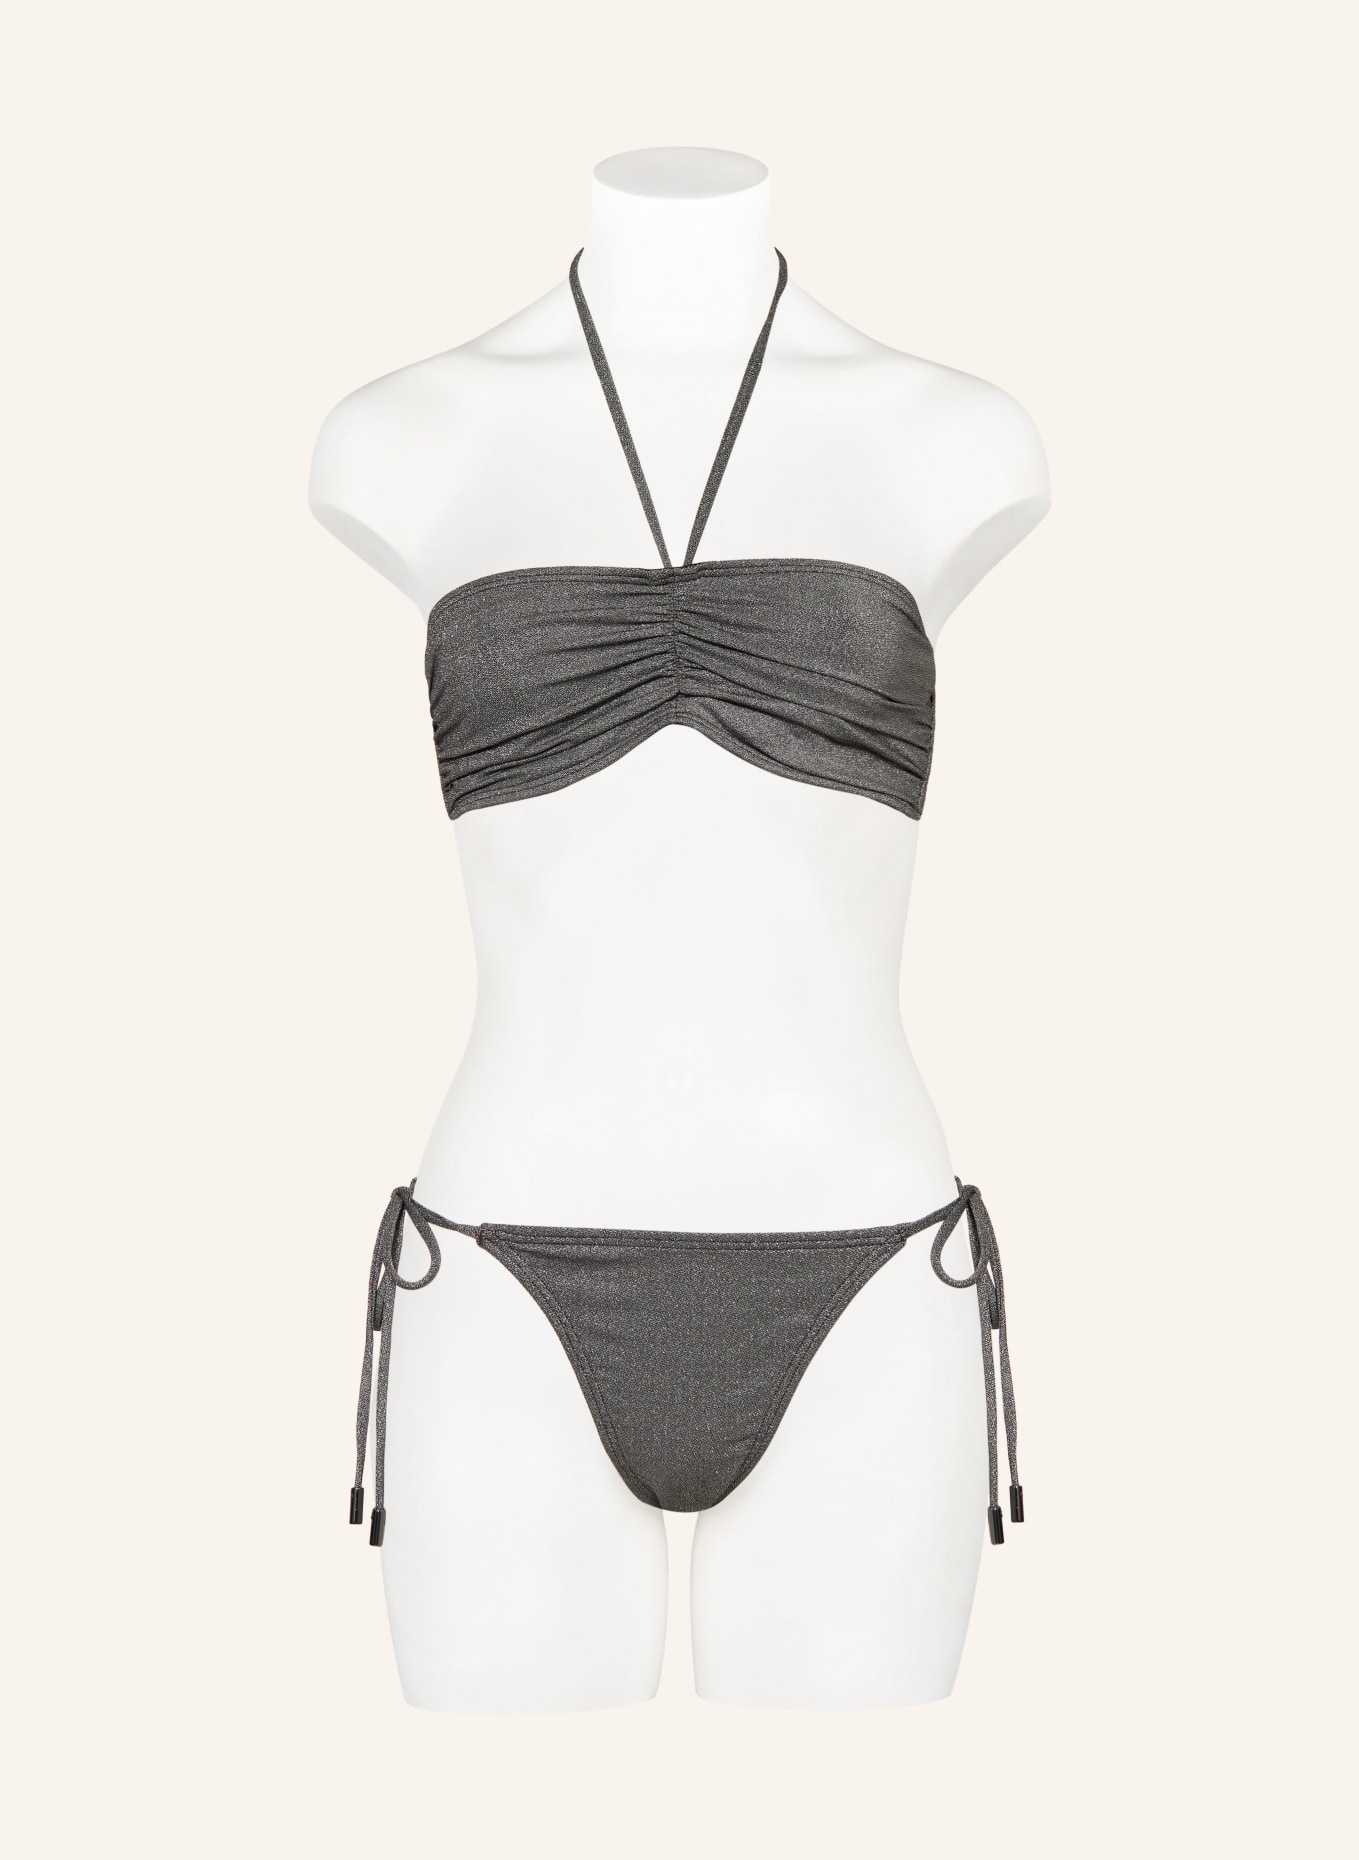 JETS Australia Triangle bikini bottoms LUMEN with glitter thread, Color: SILVER (Image 2)